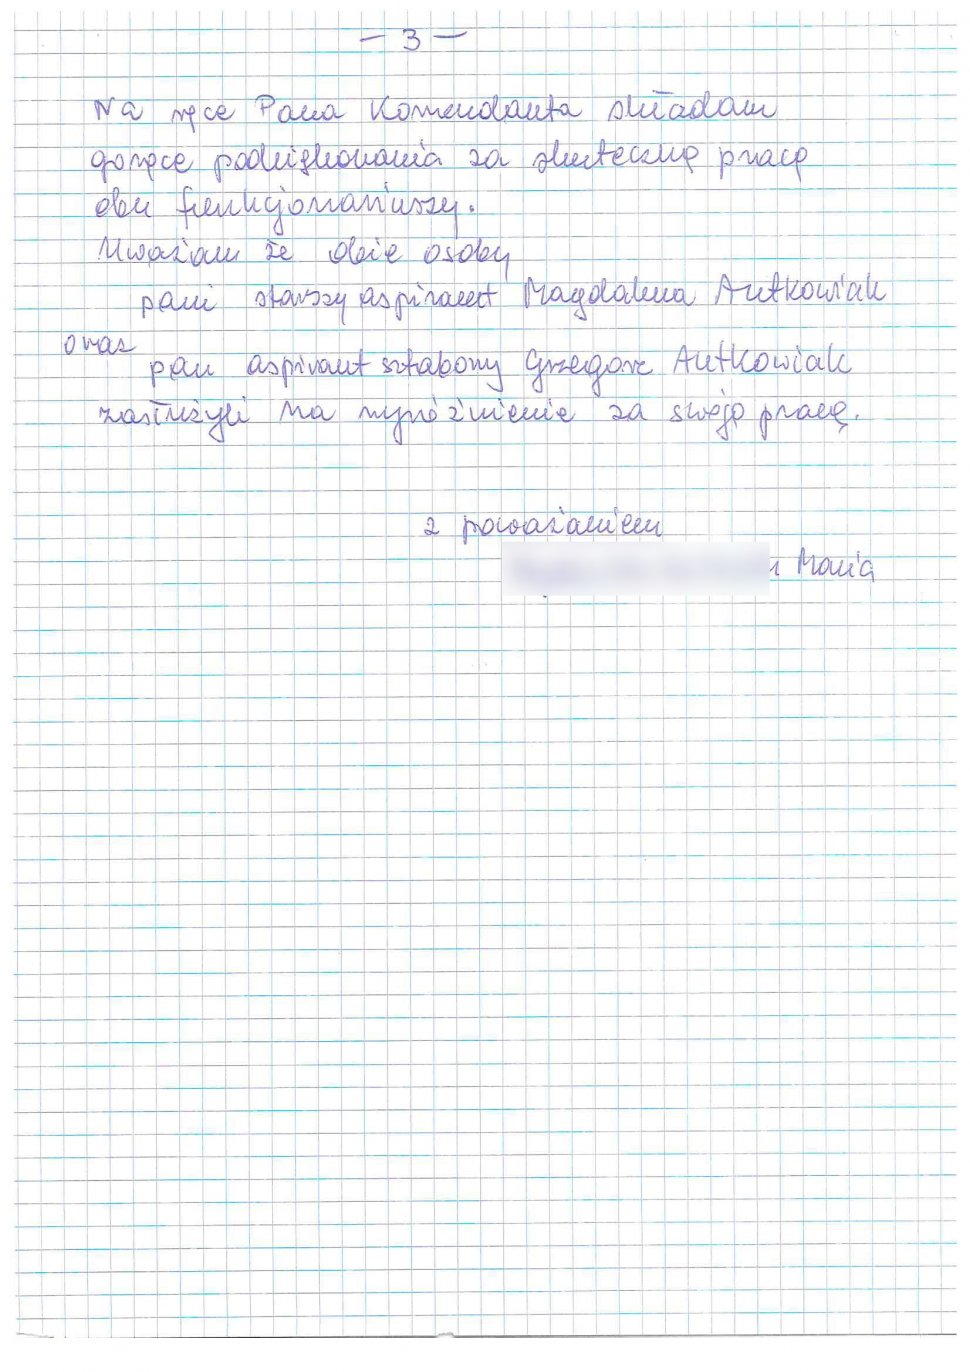 zdjęcie listu - podziękowania dla policyjnego małżeństwa z Katowic